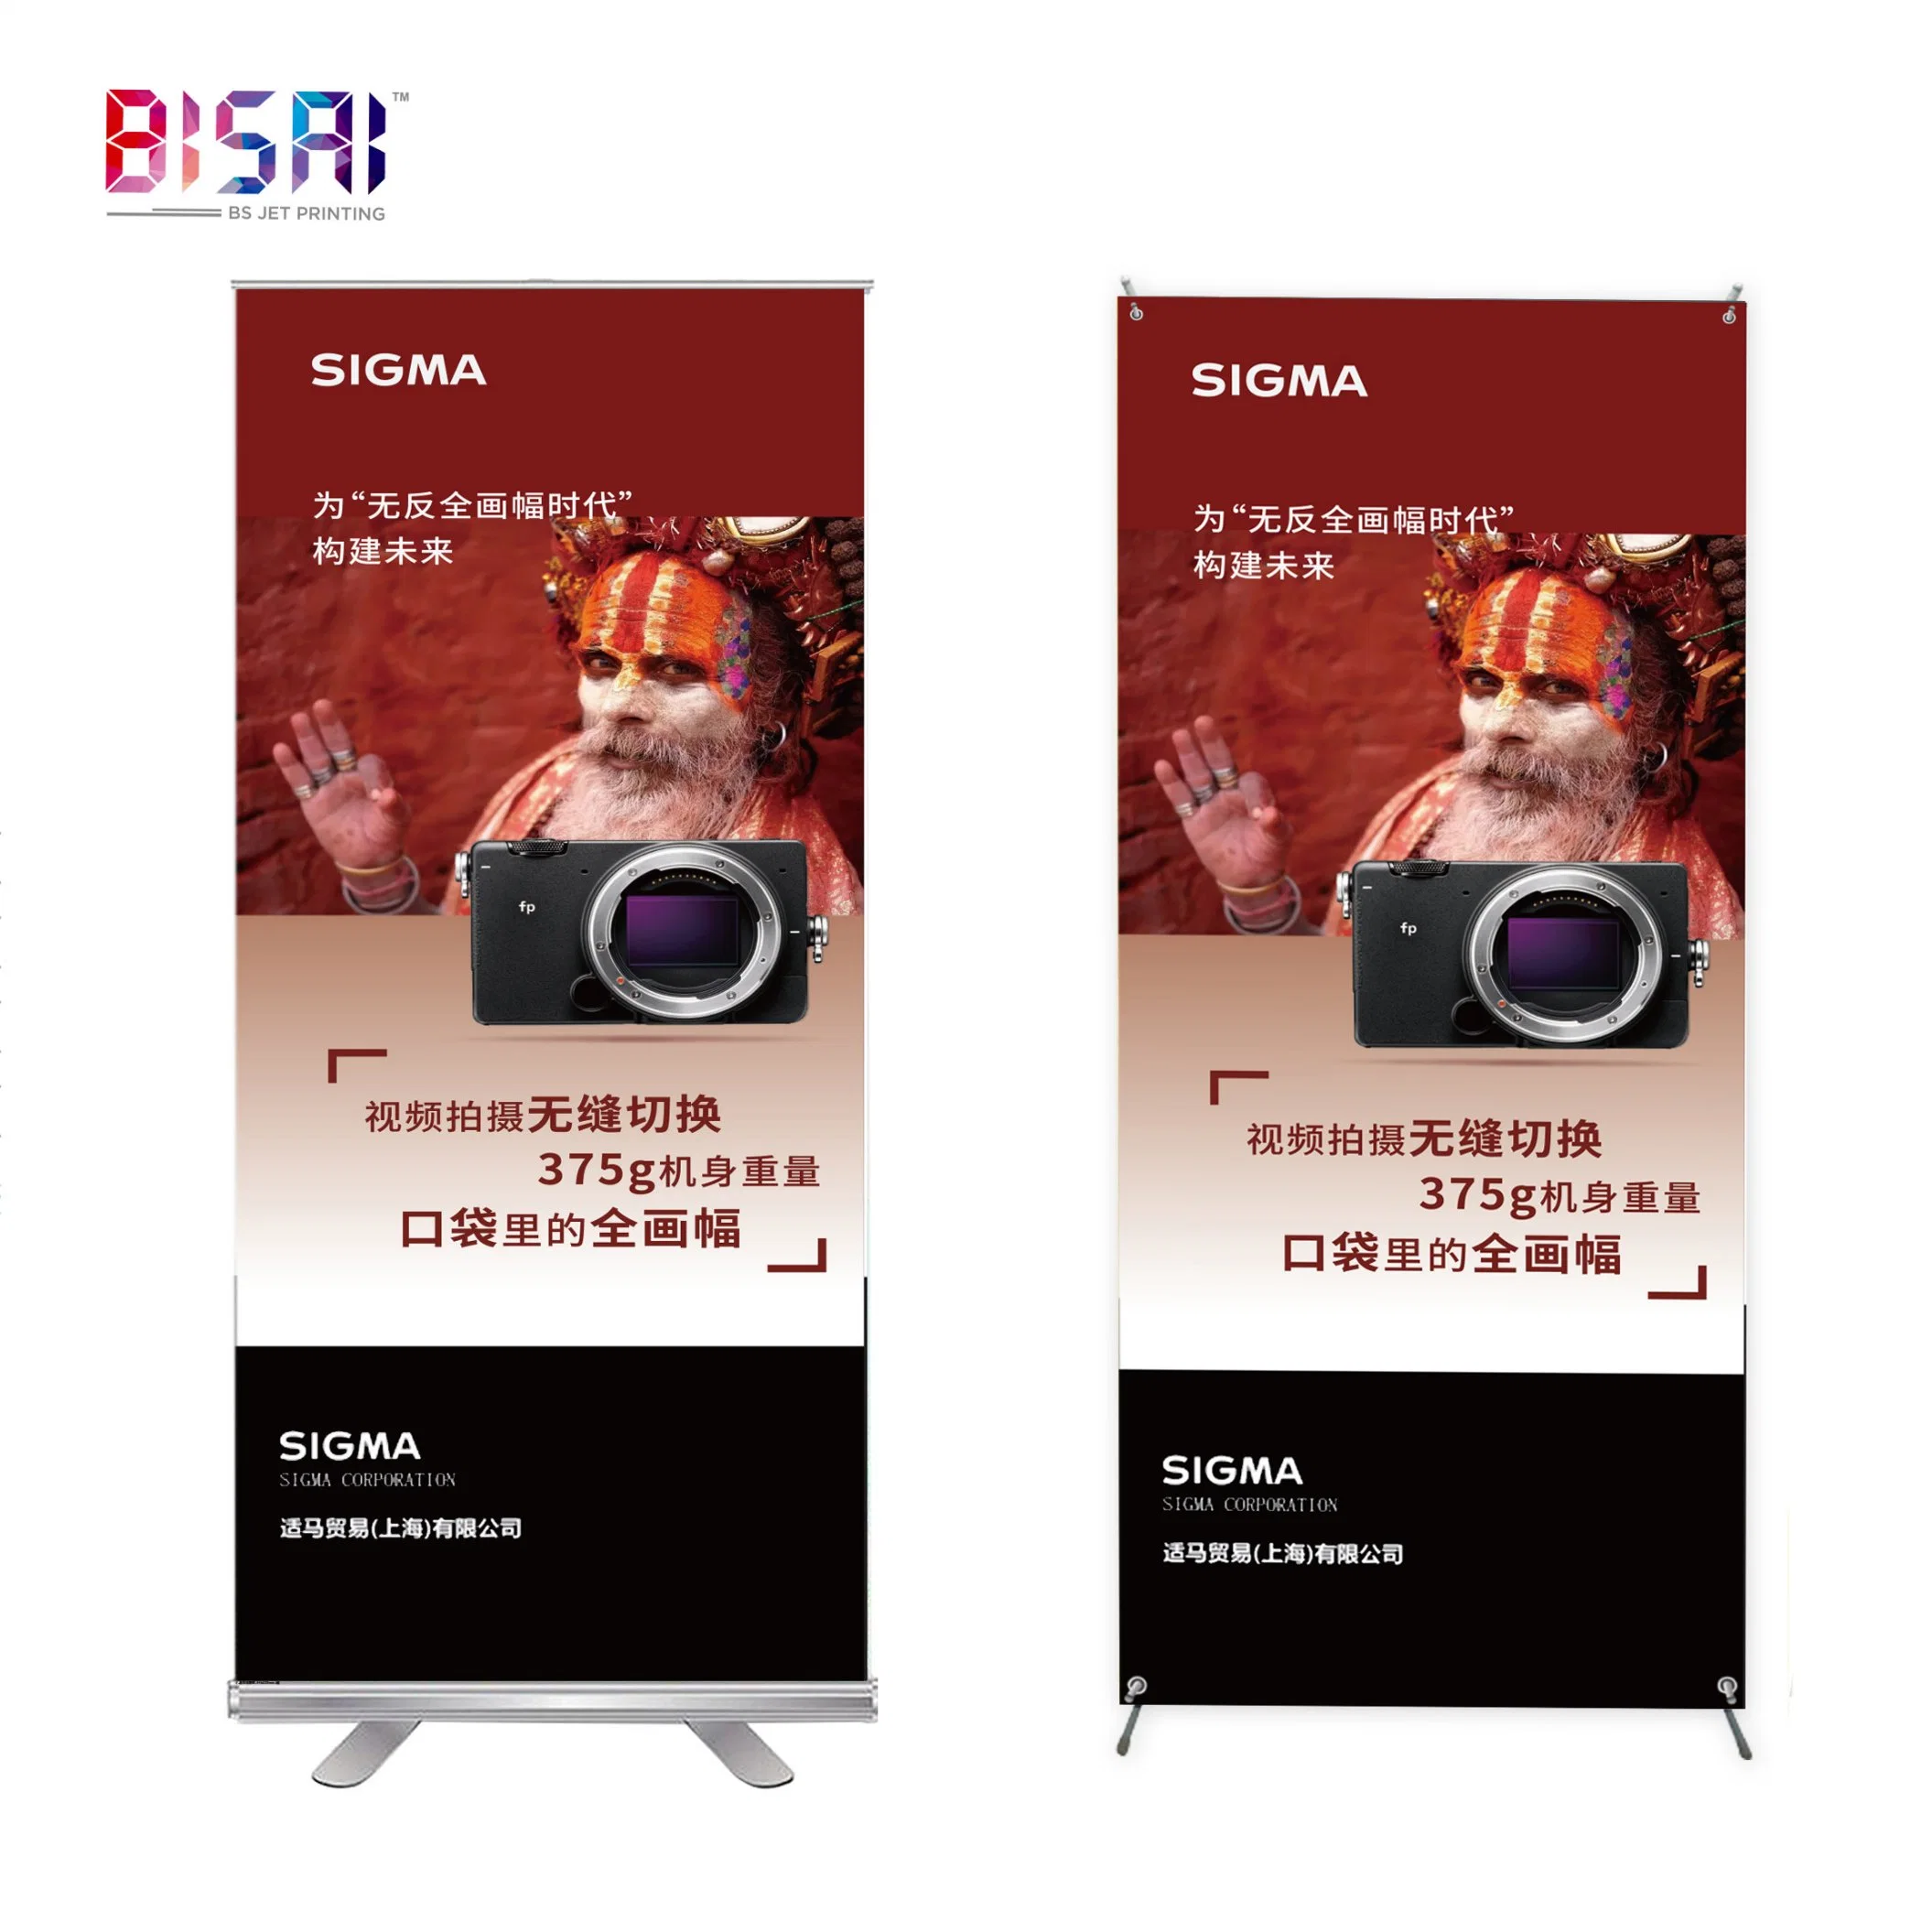 China Großhandel Customized Outdoor-Werbung Förderung PVC Acryl X-Stand Karton Standfuß mit aufrollbaren Bannern